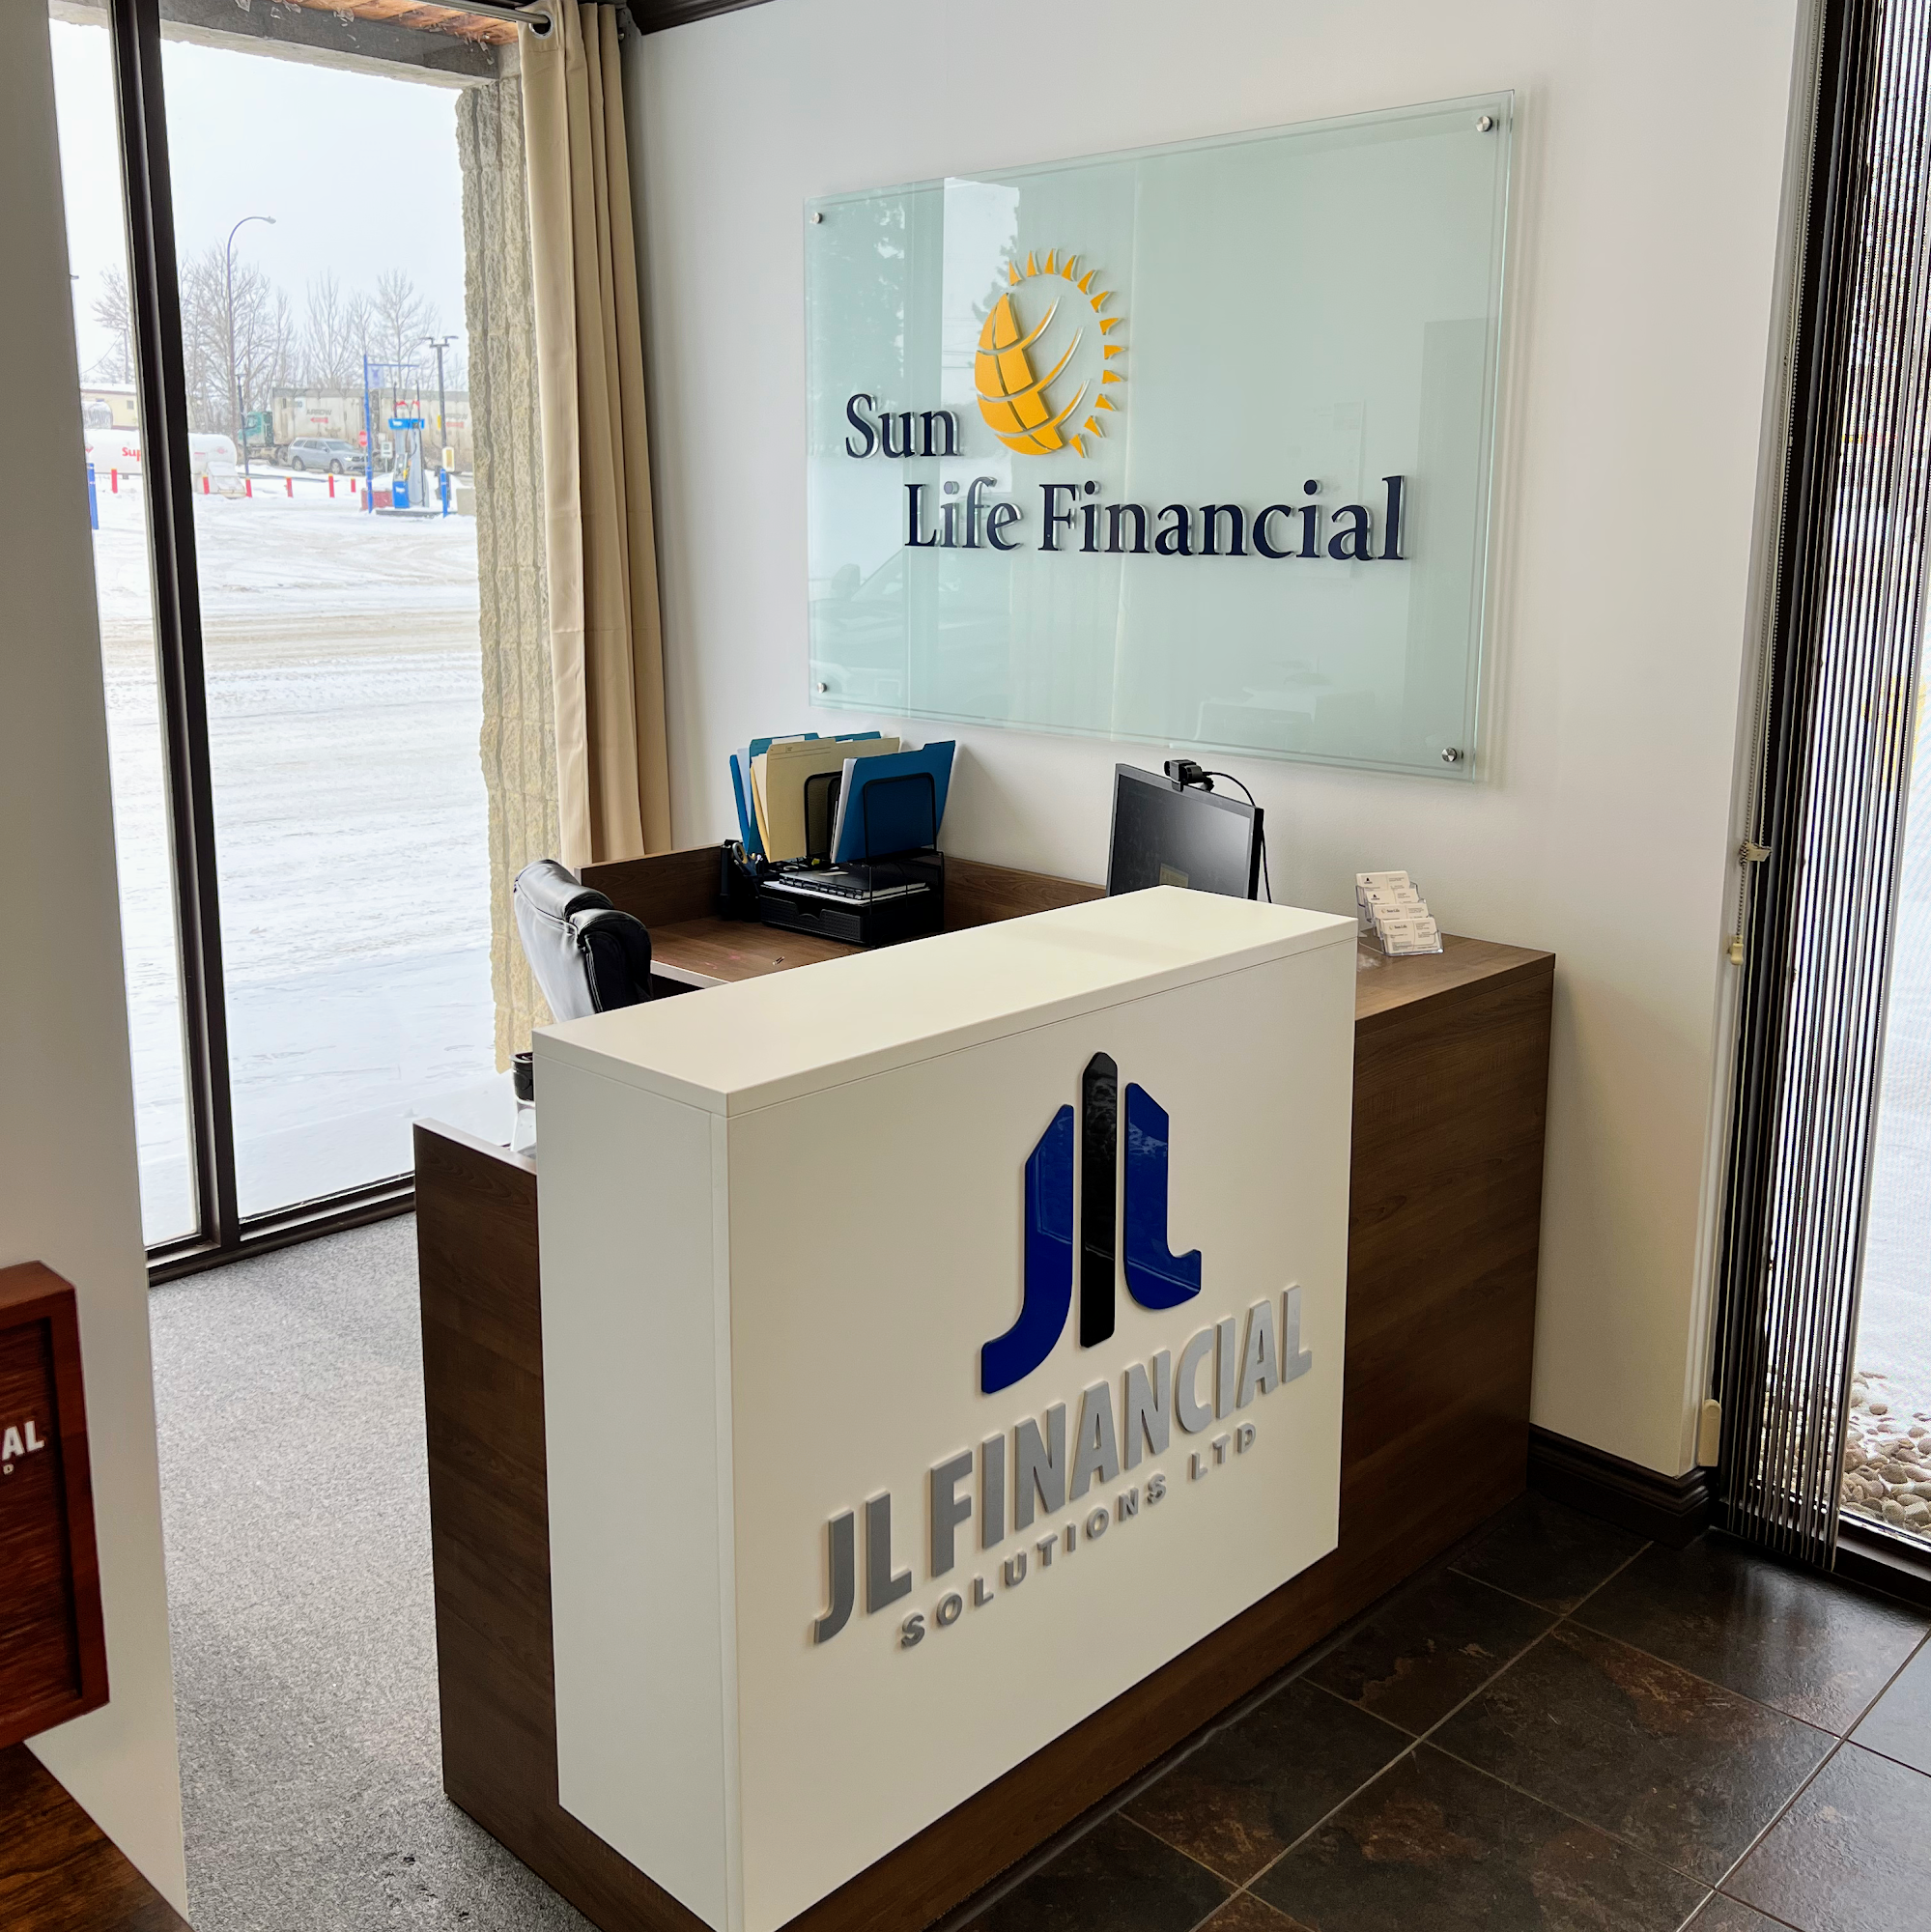 JL Financial Solutions Ltd. 413 Main St, Manning Alberta T0H 2M0